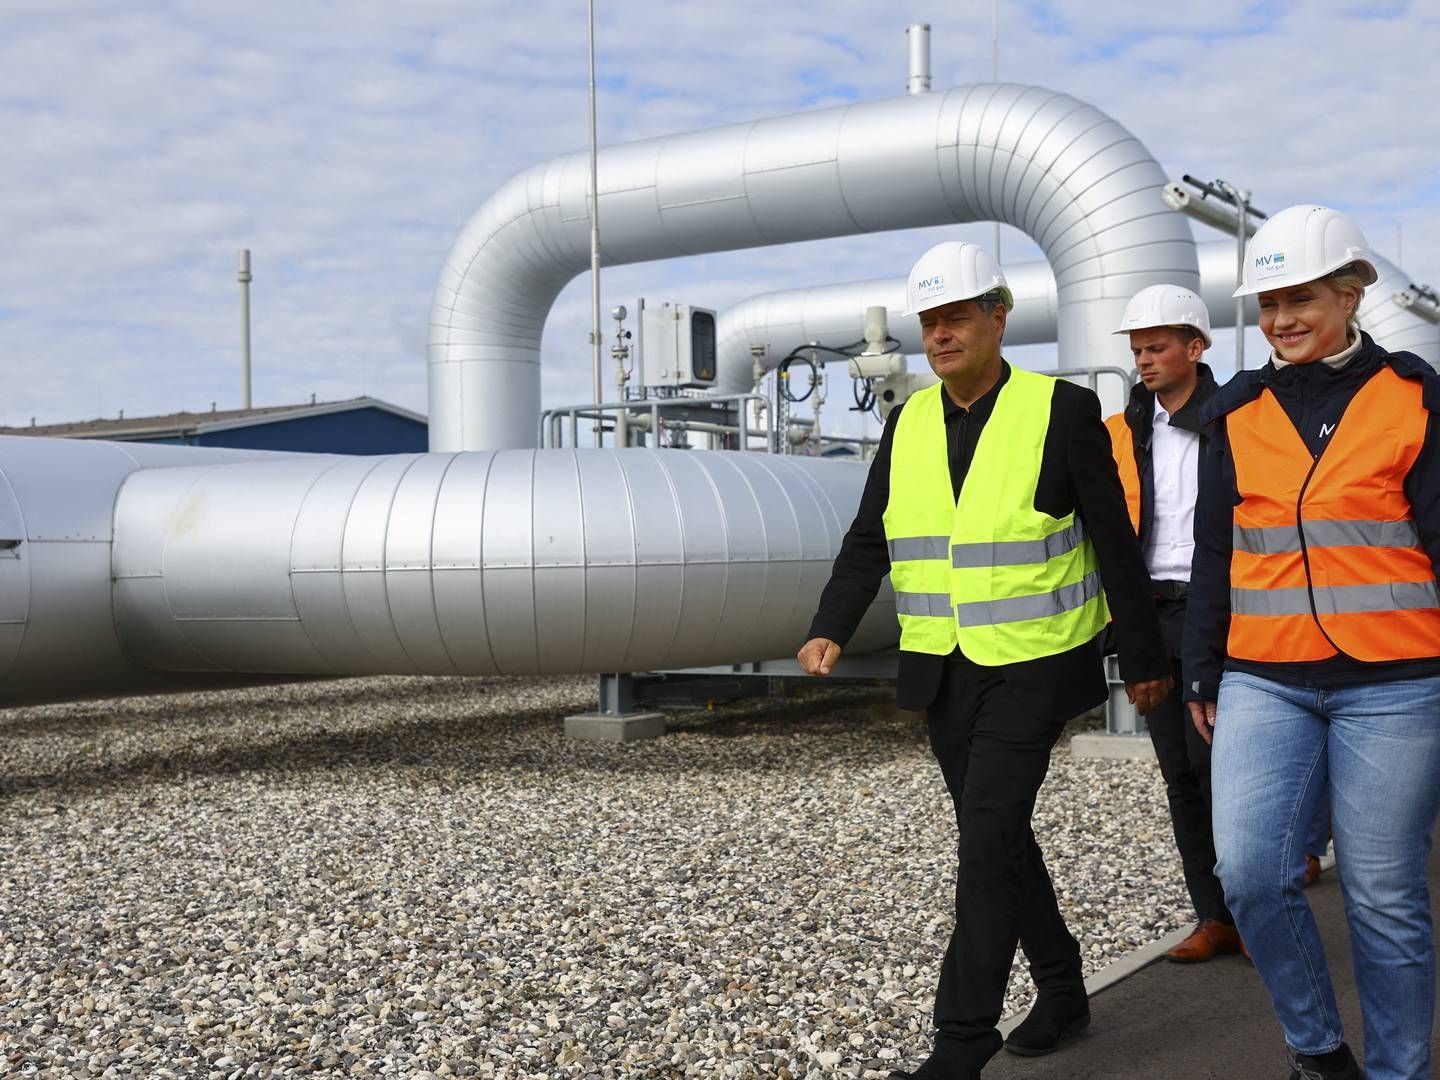 Tyskland er i gang med at bygge flere LNG-terminaler for at gøre sig uafhængig af russisk gas efter invasionen af Ukraine. Her besøger økonominister Robert Habeck en af de nye terminaler, som er ved at blive bygget. | Foto: Fabrizio Bensch/Reuters/Ritzau Scanpix